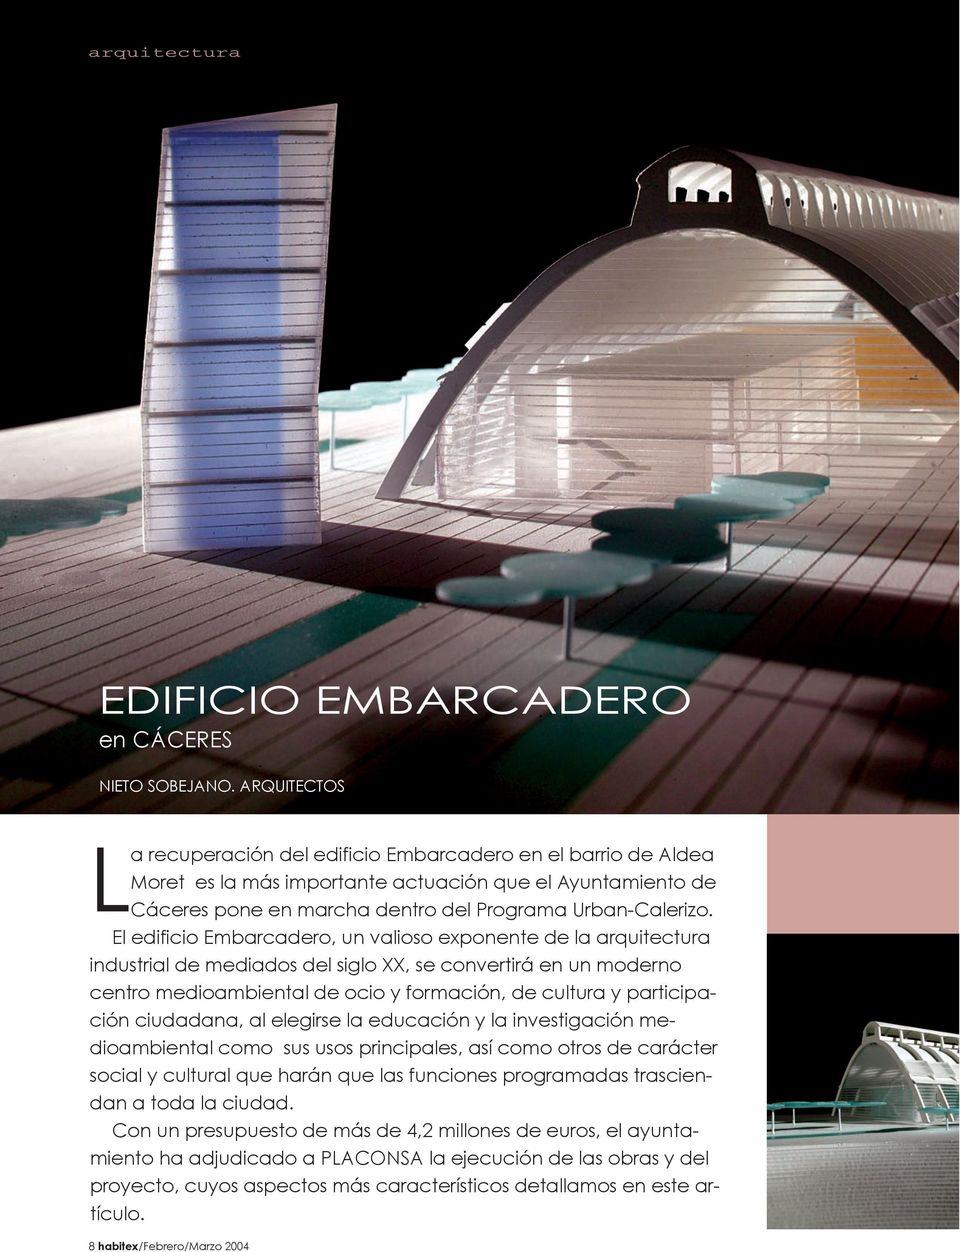 El edificio Embarcadero, un valioso exponente de la arquitectura industrial de mediados del siglo XX, se convertirá en un moderno centro medioambiental de ocio y formación, de cultura y participación